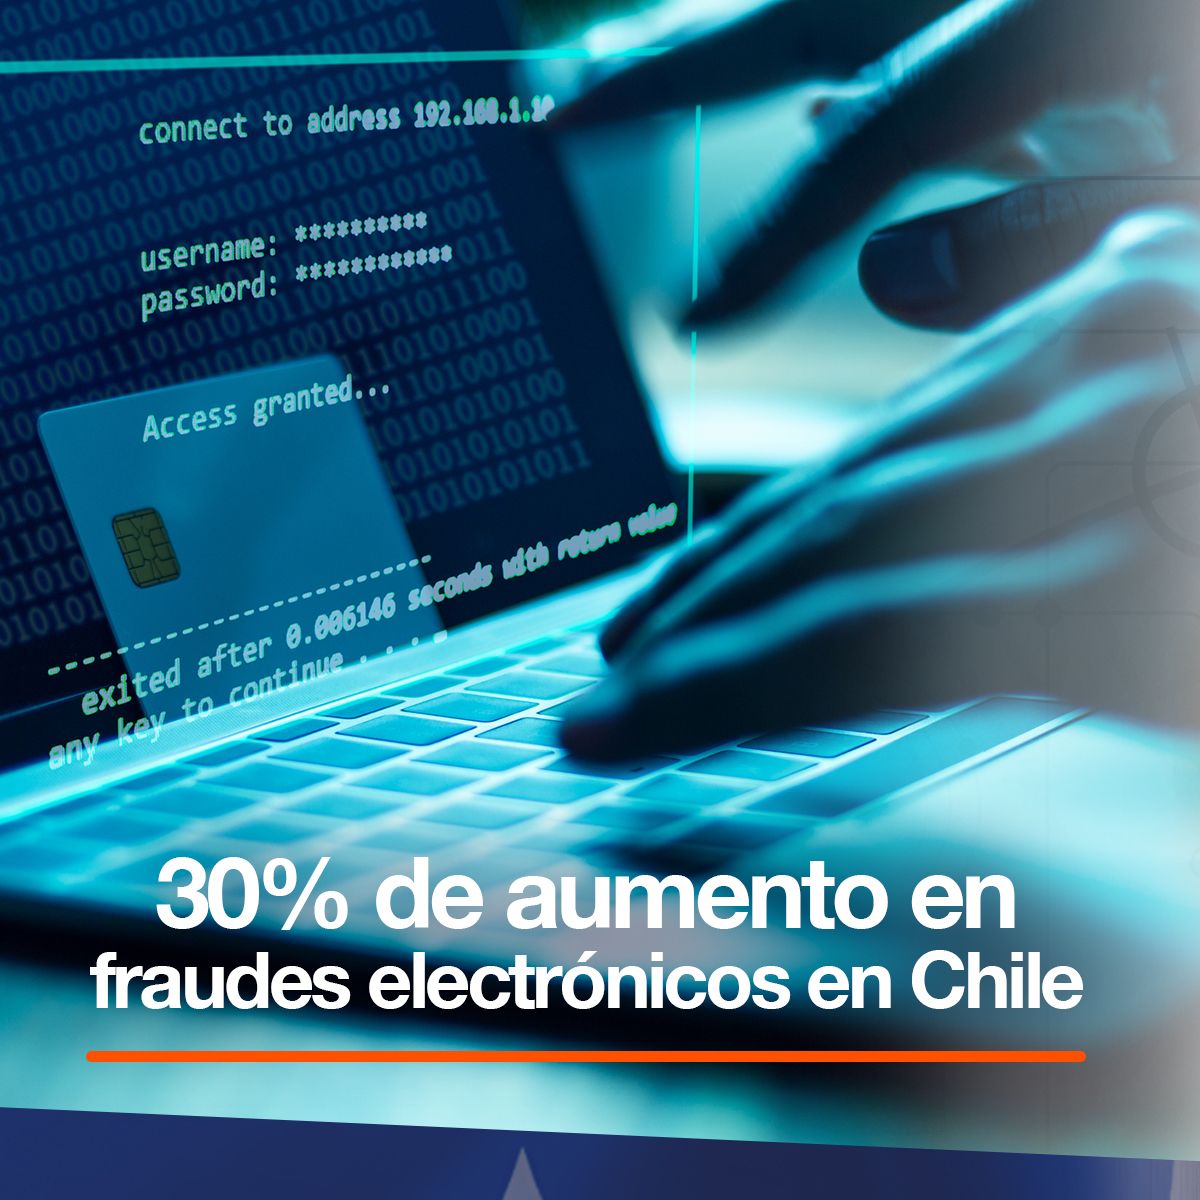 30% de aumento en fraudes electrónicos en Chile